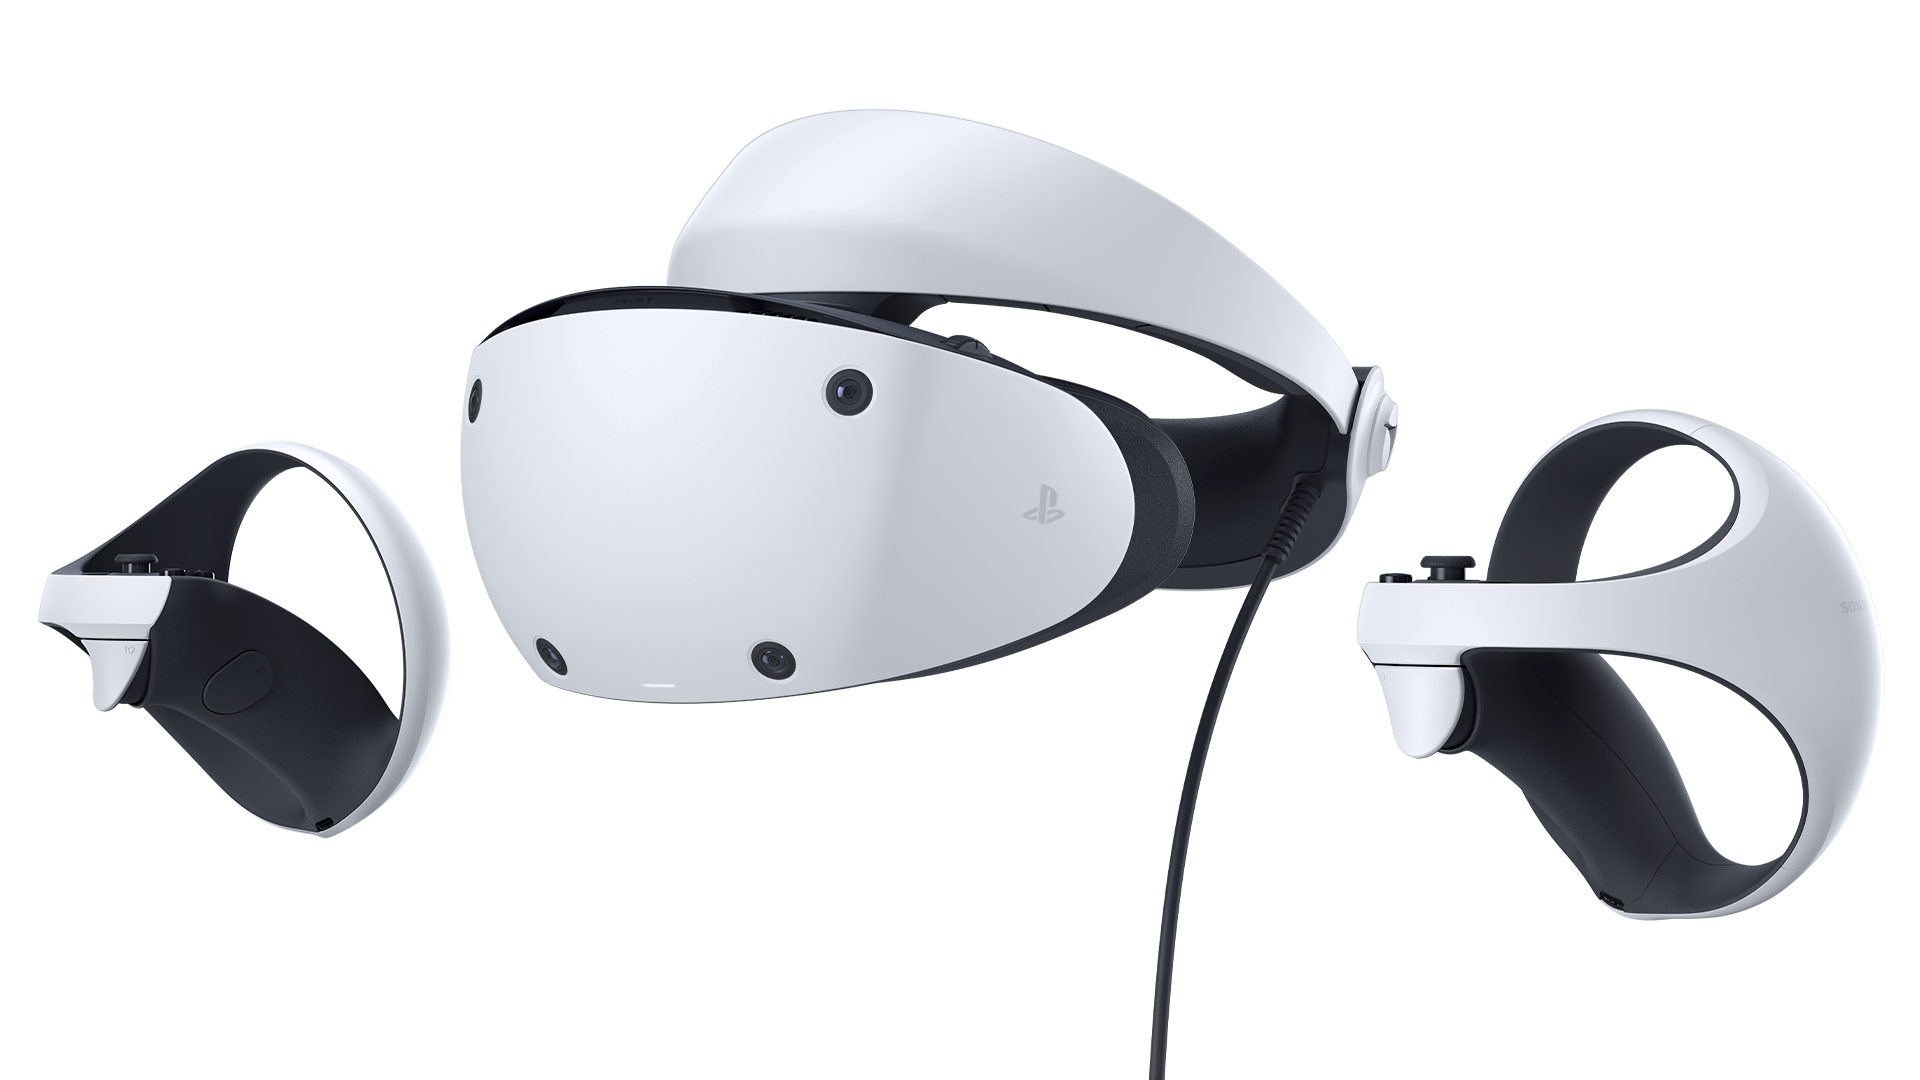 Imagem do headset do PlayStation VR2 e controles Sense